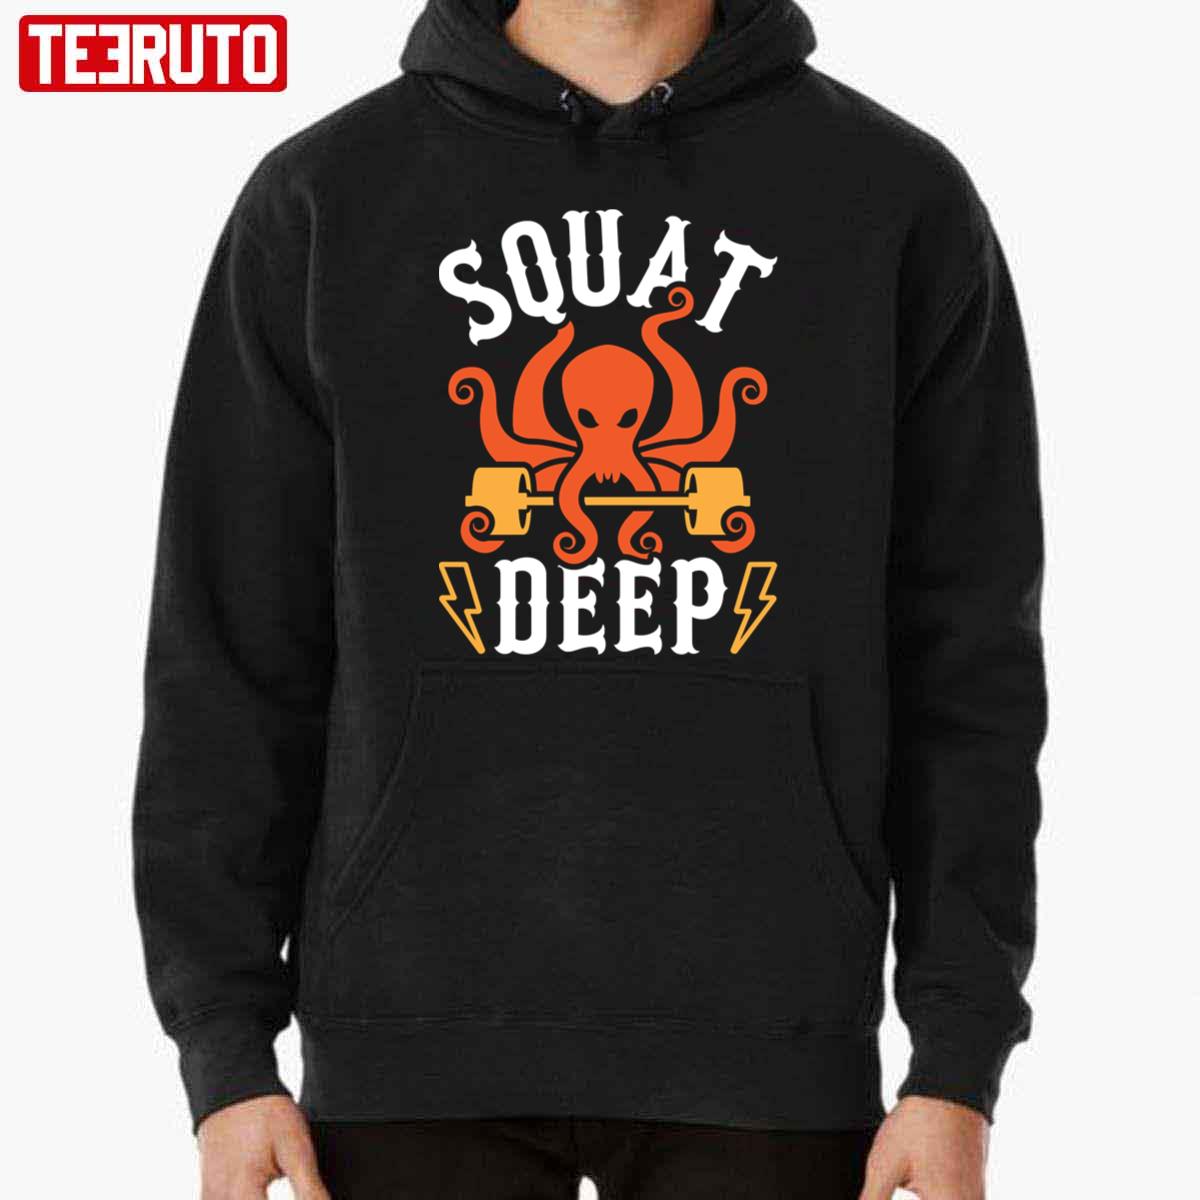 Squat Deep Kraken Unisex Hoodie